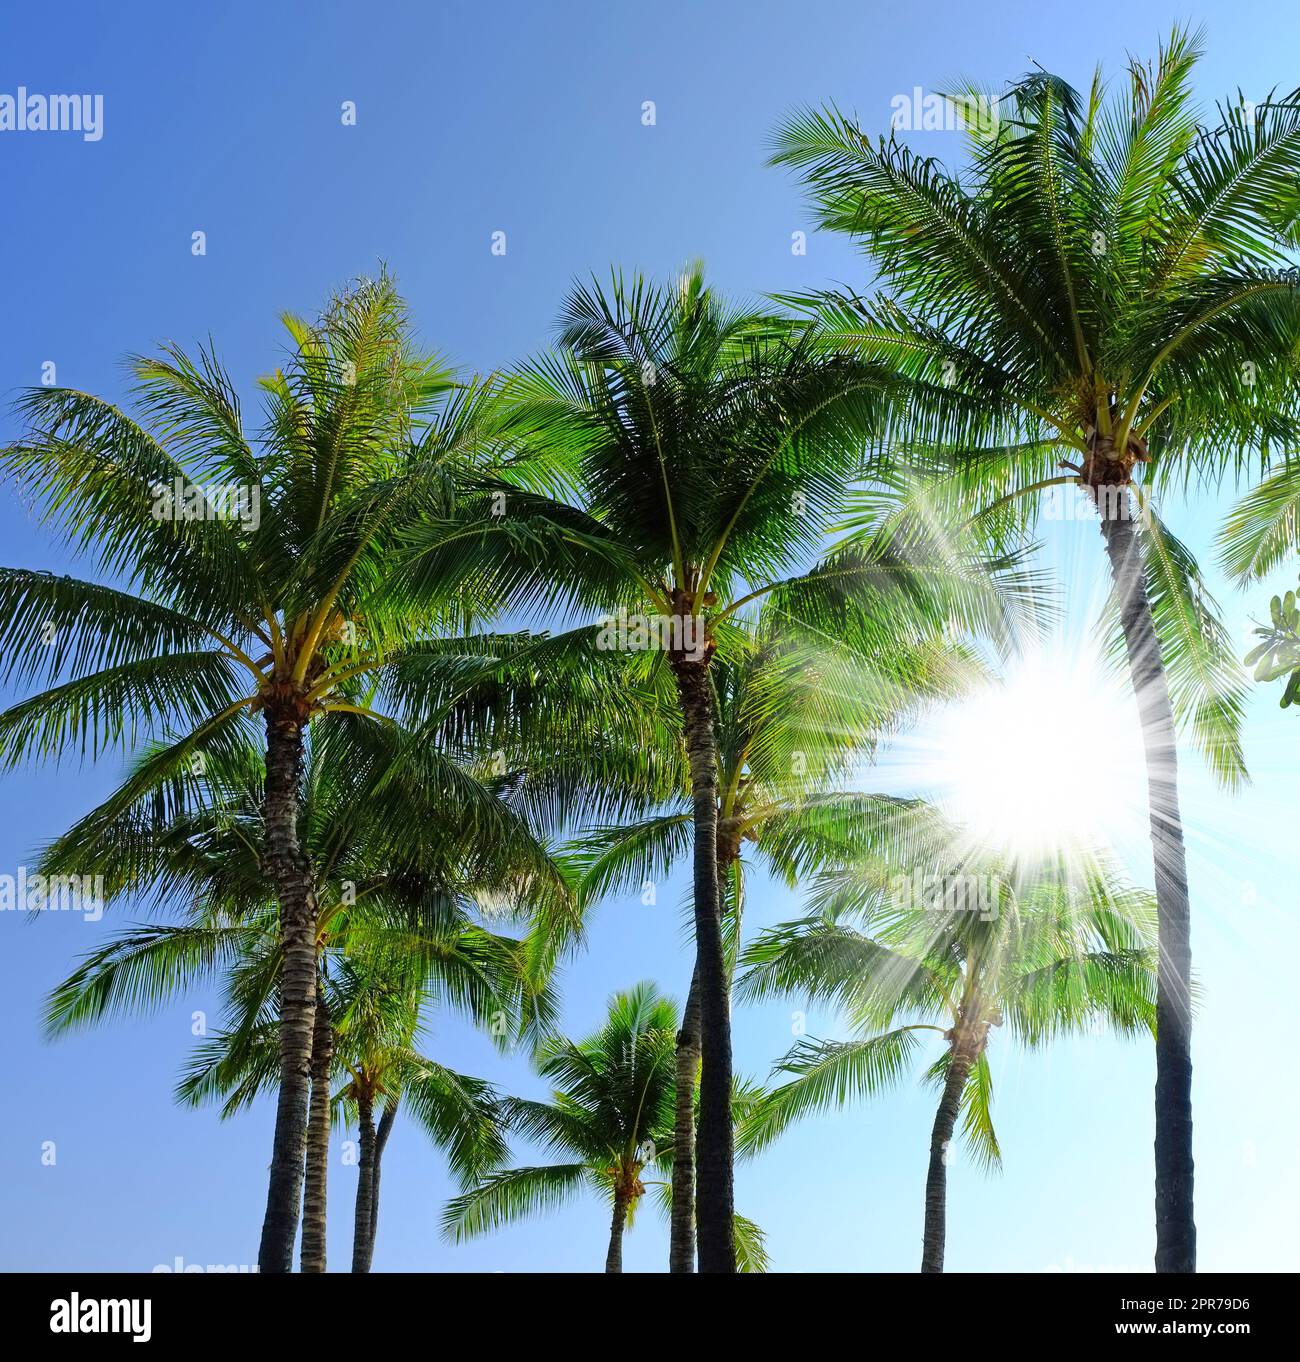 Blick unter der Erde auf eine Gruppe Palmen, isoliert vor blauem Himmelshintergrund mit Sonnenstrahlen und Sonnenstrahlen während des Sommerurlaubs und Urlaubs. Kleiner Winkel von Kokosnusspflanzen, die in tropischer Umgebung wachsen Stockfoto